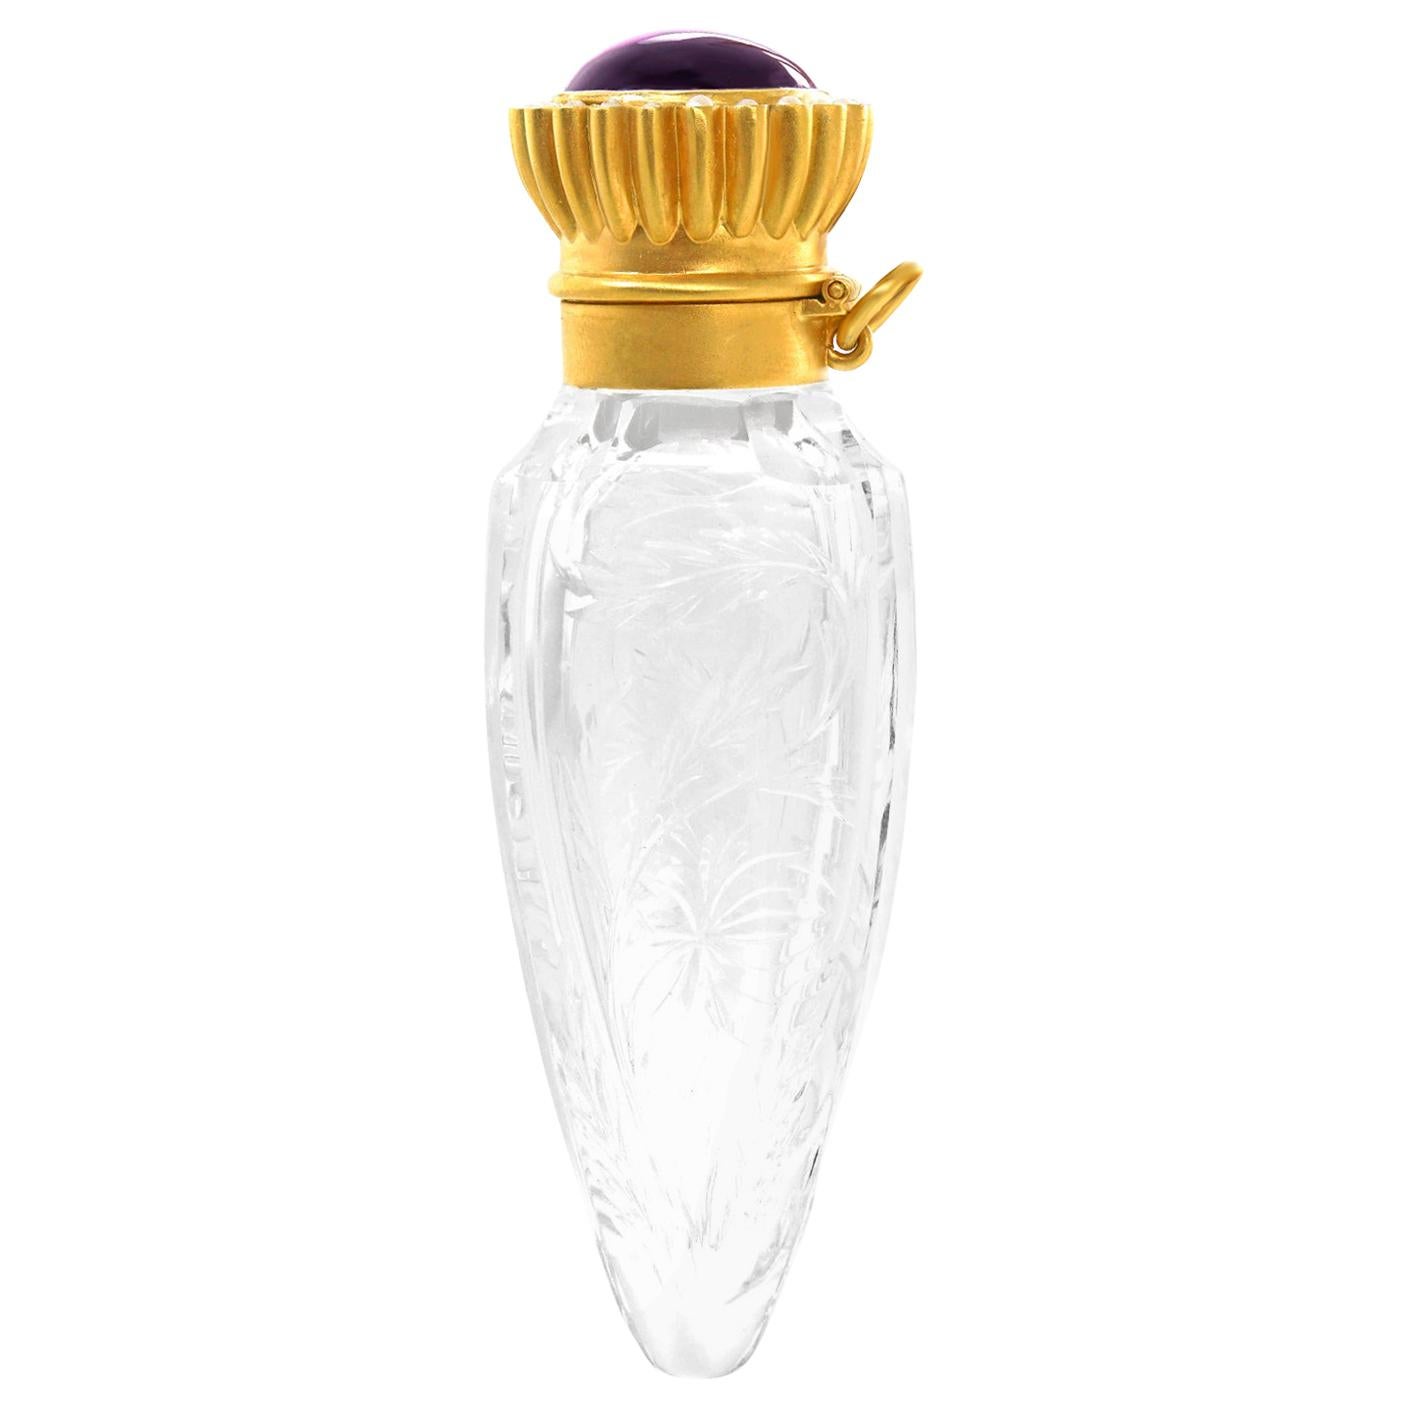 Udall & Ballou Gold and Crystal Perfume